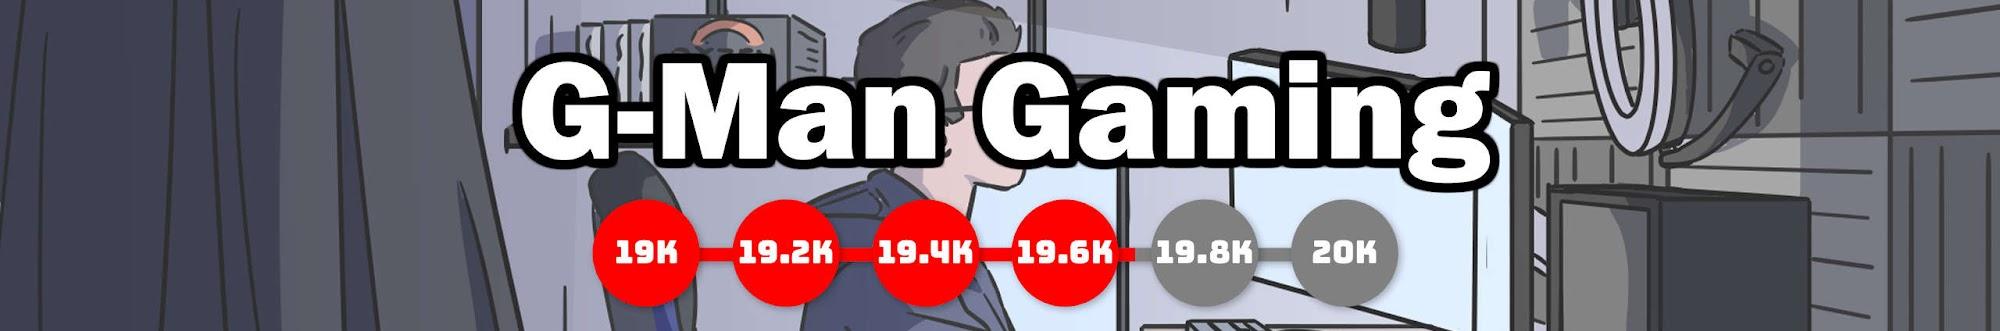 G-Man Gaming